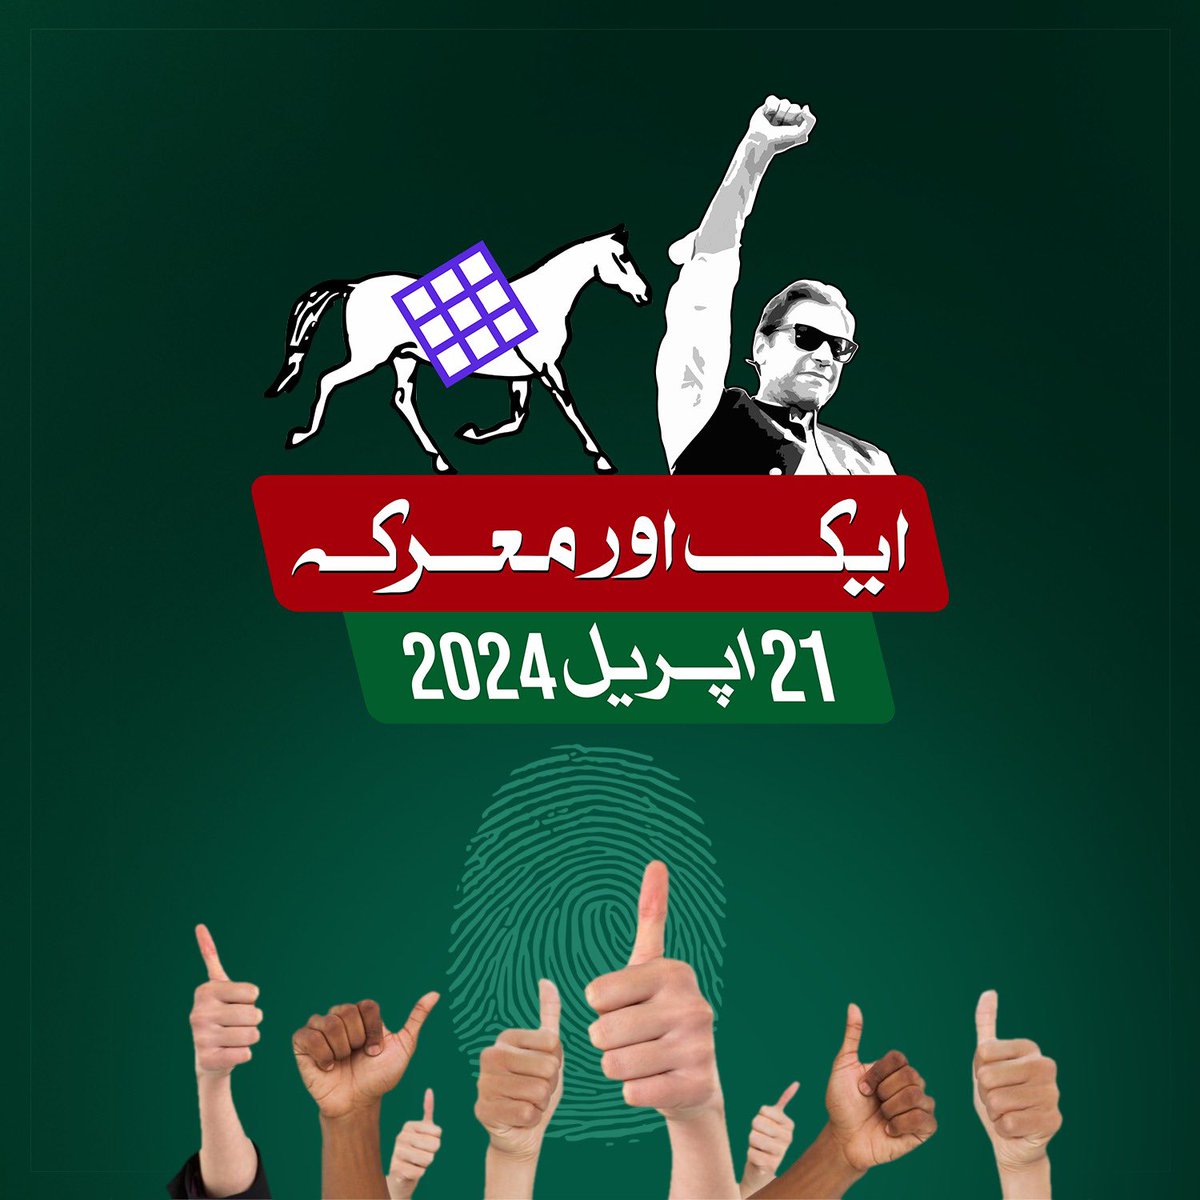 21 اپریل کو نکلو اور ووٹ ڈال کر بتا دو #ووٹ_عمران_خان_کا  ہے اور #عمران_کا_پلڑا_بھاری_ہے